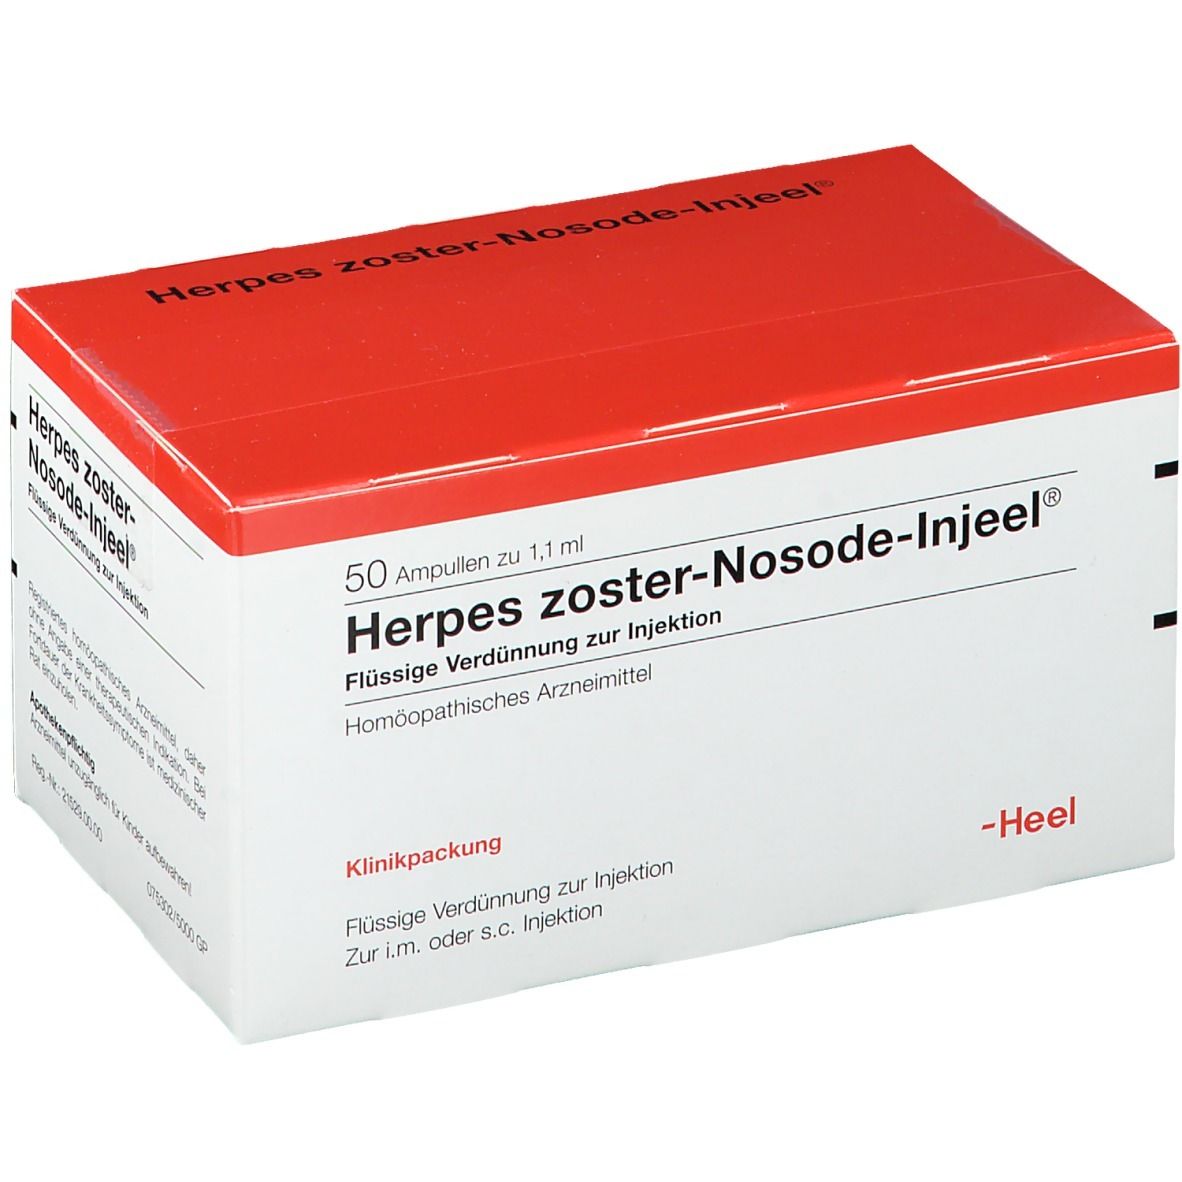 Herpes zoster-Nosode-Injeel® Ampullen